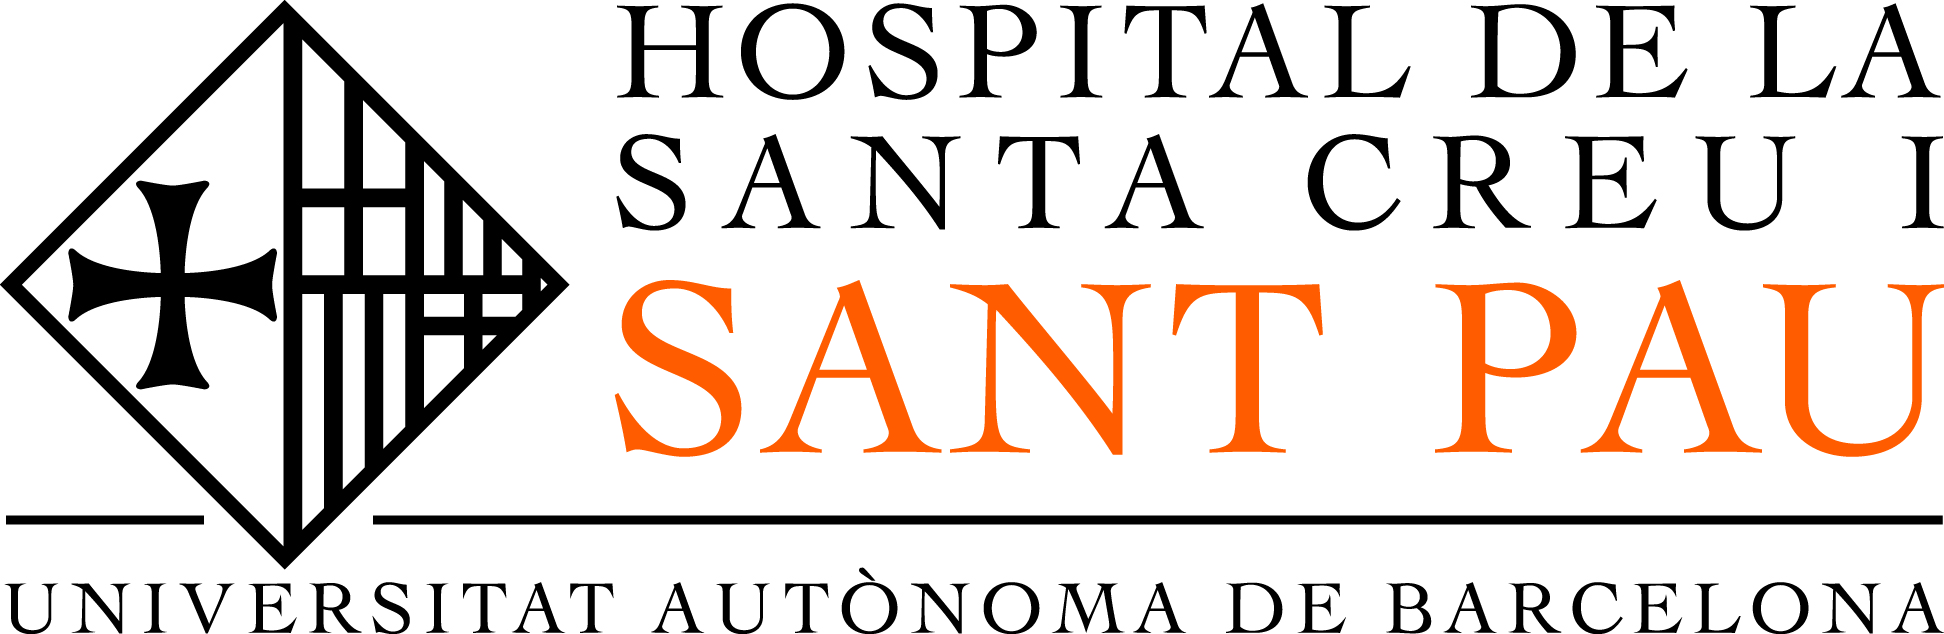 Logotip de l'Hospital de Sant Pau